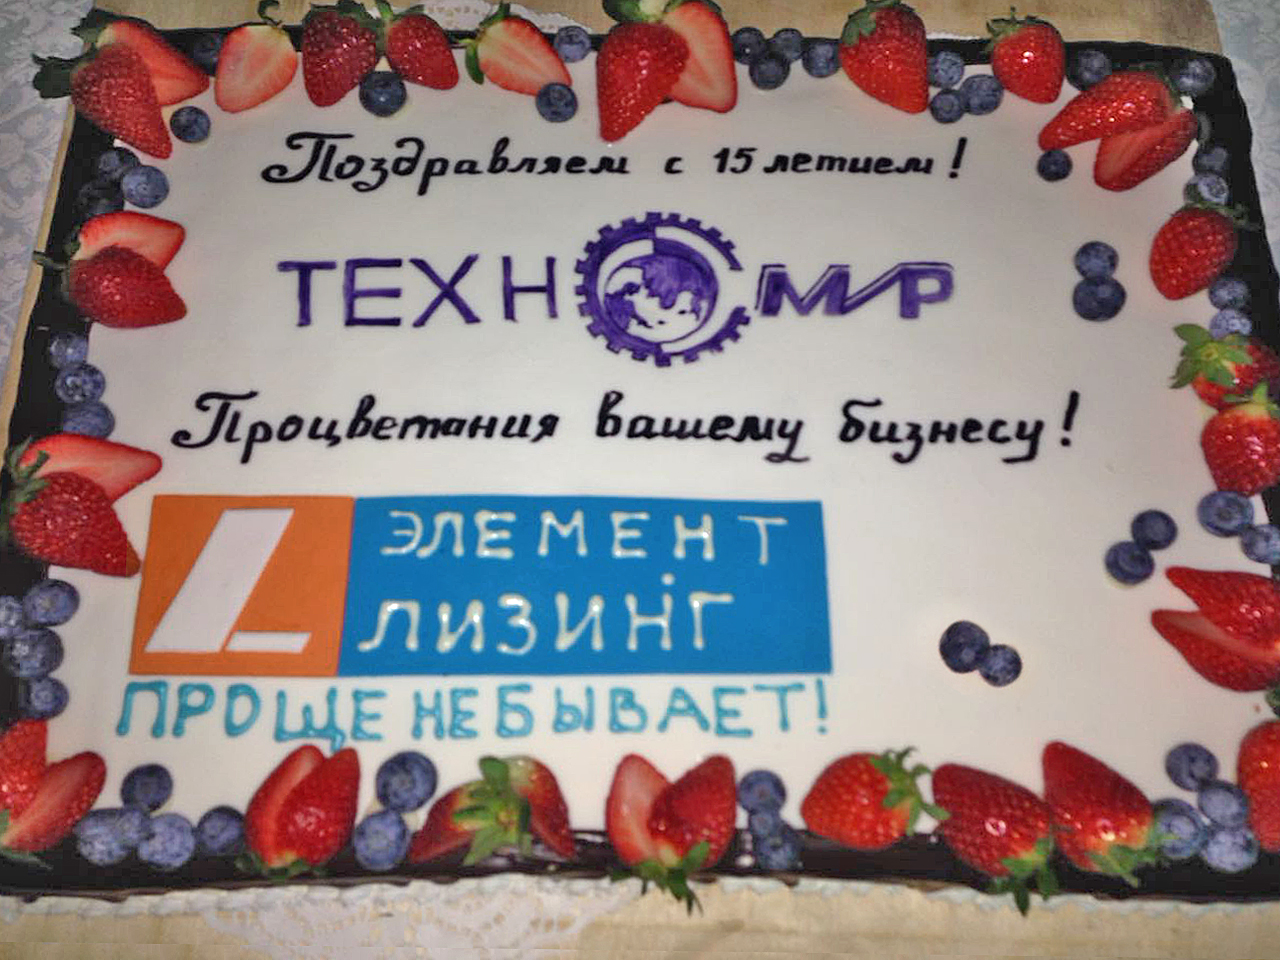 «Элемент Лизинг» поздравил поставщика спецтехники «Техномир» с 15-летием